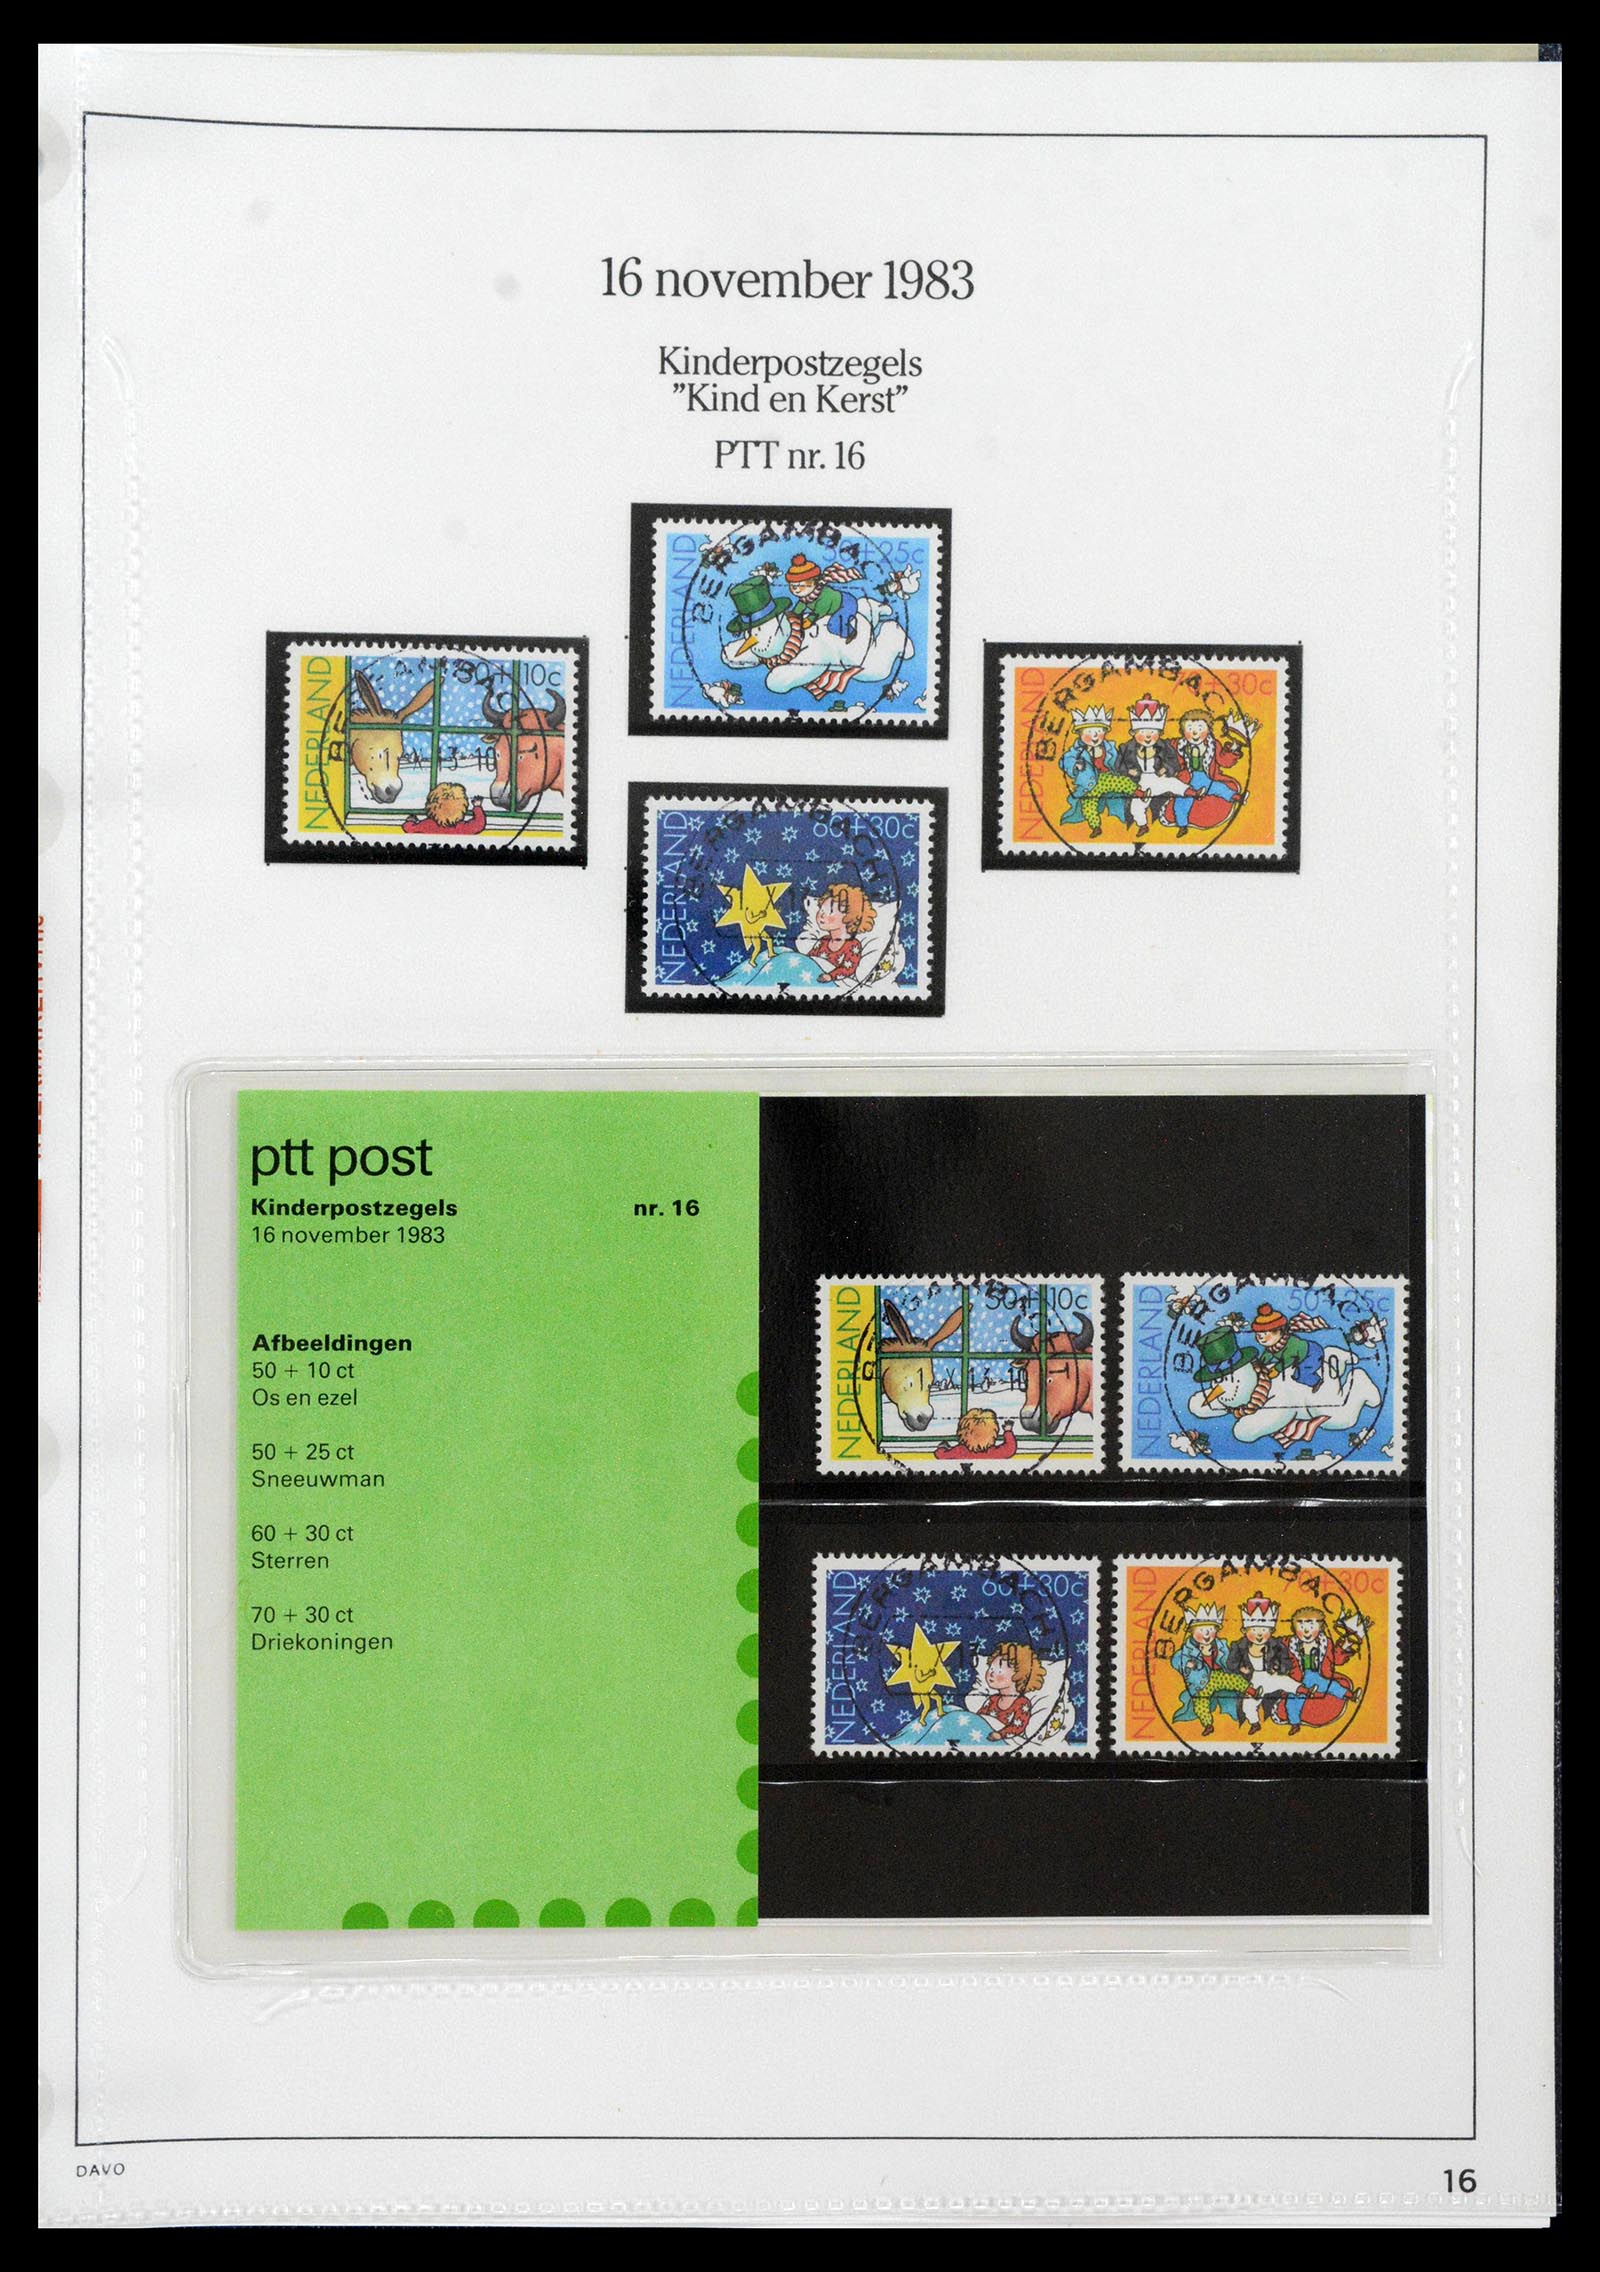 39121 0016 - Stamp collection 39121 Netherlands presentationpacks 1982-2001.